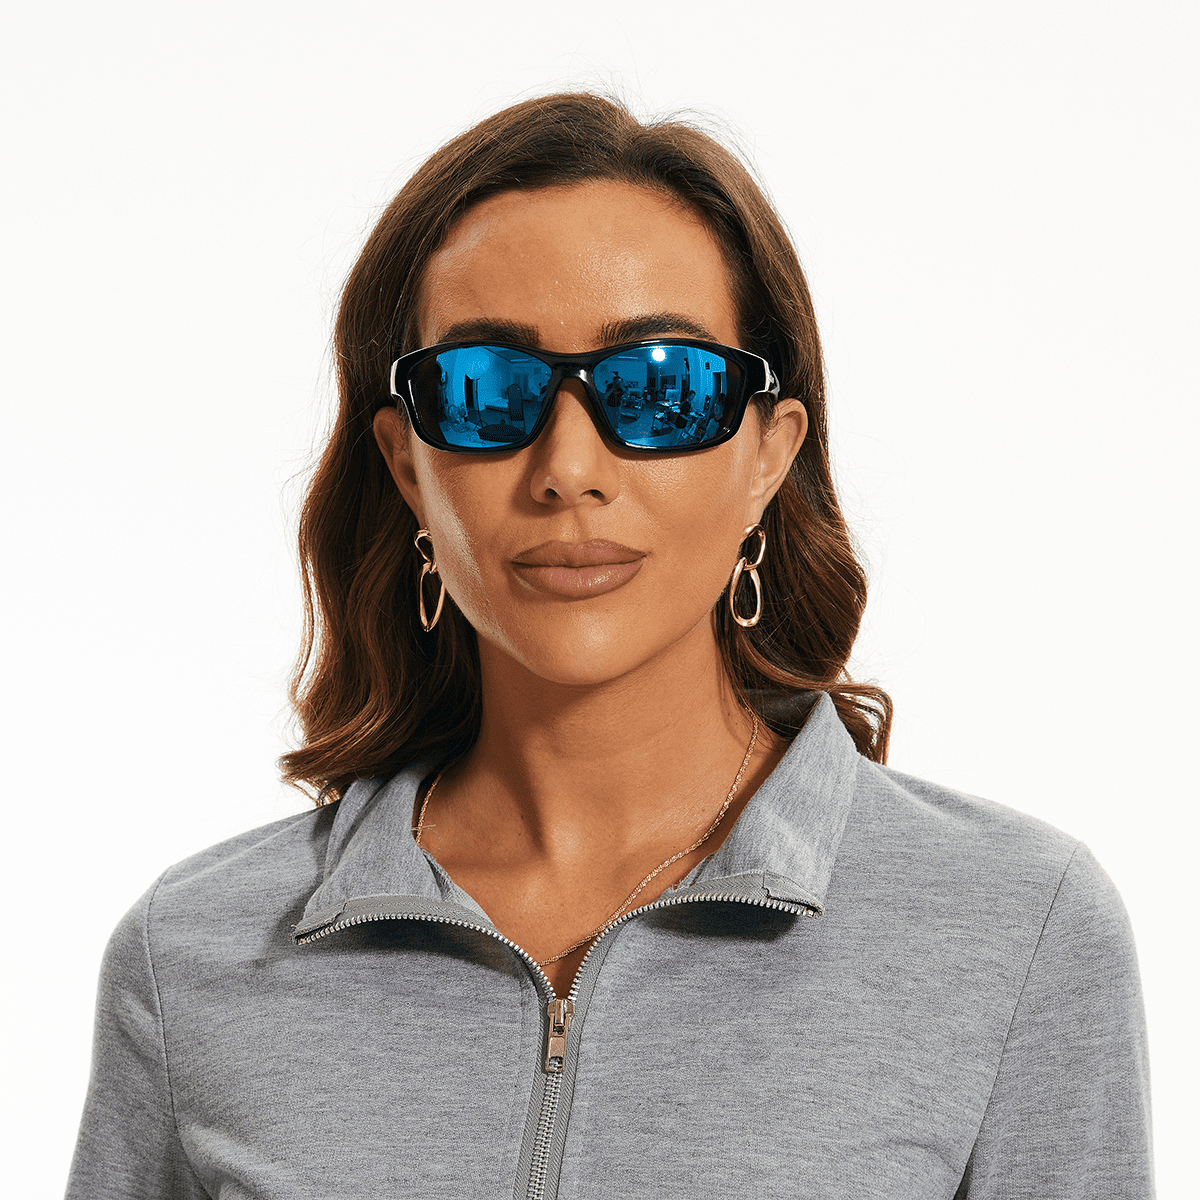 Buy BNUS Sunglasses for Men & Women, Polarized glass lens, Color